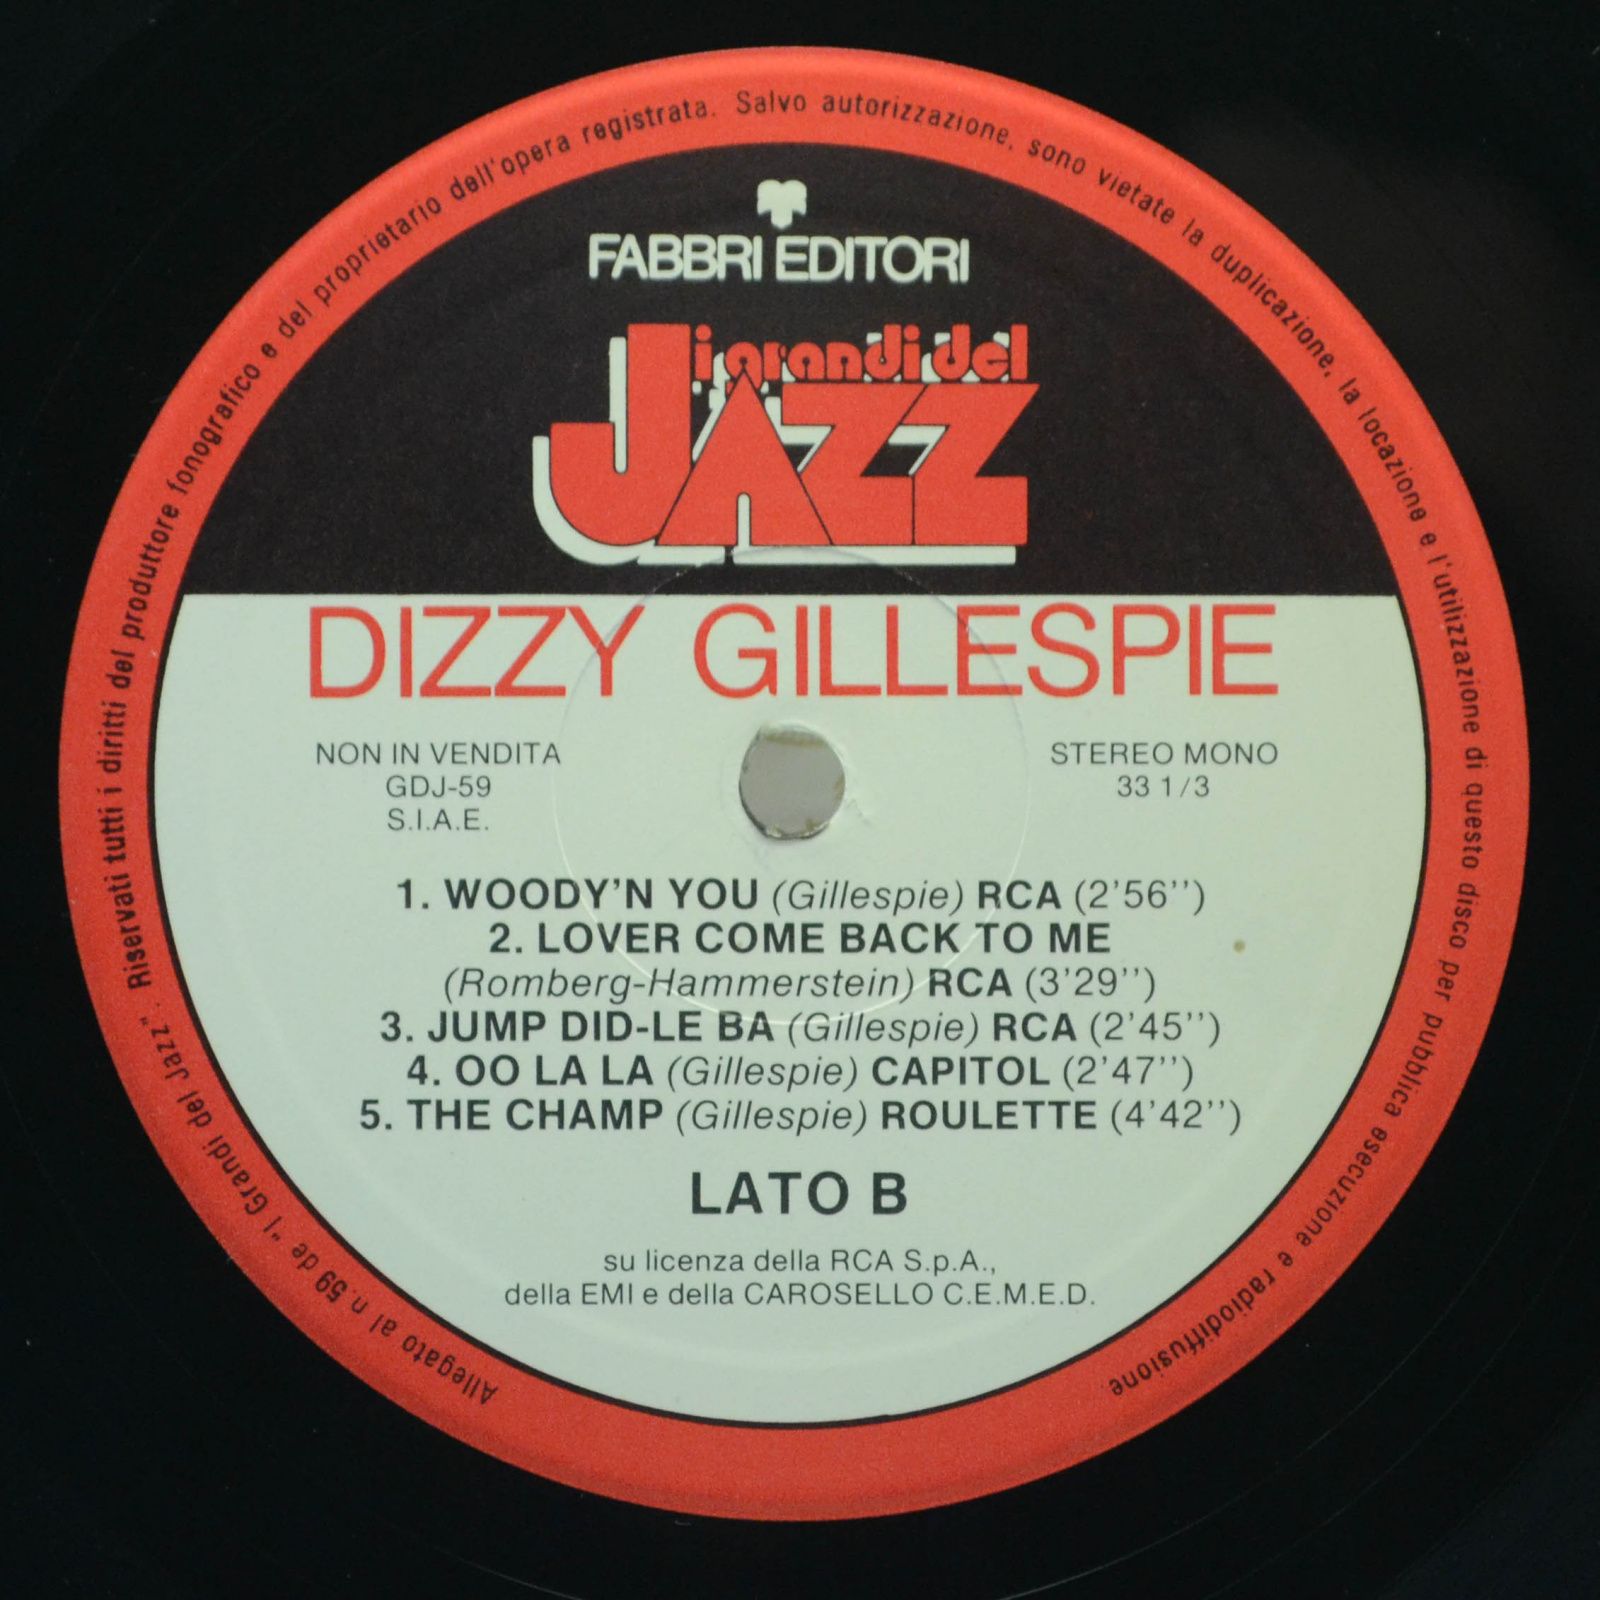 Dizzy Gillepsie — Dizzy Gillespie, 1979